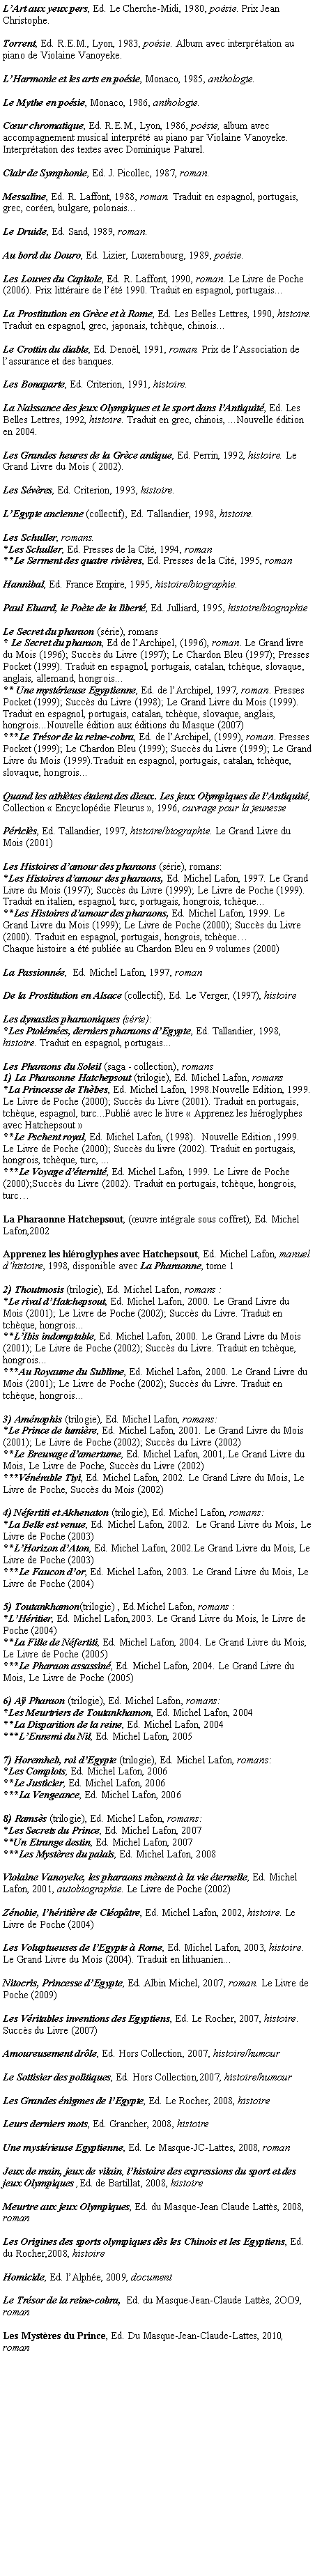 Zone de Texte: LArt aux yeux pers, Ed. Le Cherche-Midi, 1980, posie. Prix Jean Christophe.Torrent, Ed. R.E.M., Lyon, 1983, posie. Album avec interprtation au piano de Violaine Vanoyeke.LHarmonie et les arts en posie, Monaco, 1985, anthologie.Le Mythe en posie, Monaco, 1986, anthologie.Cur chromatique, Ed. R.E.M., Lyon, 1986, posie, album avec accompagnement musical interprt au piano par Violaine Vanoyeke. Interprtation des textes avec Dominique Paturel.Clair de Symphonie, Ed. J. Picollec, 1987, roman.Messaline, Ed. R. Laffont, 1988, roman. Traduit en espagnol, portugais, grec, coren, bulgare, polonais...Le Druide, Ed. Sand, 1989, roman.Au bord du Douro, Ed. Lizier, Luxembourg, 1989, posie.Les Louves du Capitole, Ed. R. Laffont, 1990, roman. Le Livre de Poche (2006). Prix littraire de lt 1990. Traduit en espagnol, portugais...La Prostitution en Grce et  Rome, Ed. Les Belles Lettres, 1990, histoire. Traduit en espagnol, grec, japonais, tchque, chinois...Le Crottin du diable, Ed. Denol, 1991, roman. Prix de lAssociation de lassurance et des banques.Les Bonaparte, Ed. Criterion, 1991, histoire.La Naissance des jeux Olympiques et le sport dans lAntiquit, Ed. Les Belles Lettres, 1992, histoire. Traduit en grec, chinois, ...Nouvelle dition en 2004.Les Grandes heures de la Grce antique, Ed. Perrin, 1992, histoire. Le Grand Livre du Mois ( 2002).Les Svres, Ed. Criterion, 1993, histoire.LEgypte ancienne (collectif), Ed. Tallandier, 1998, histoire.Les Schuller, romans.*Les Schuller, Ed. Presses de la Cit, 1994, roman**Le Serment des quatre rivires, Ed. Presses de la Cit, 1995, romanHannibal, Ed. France Empire, 1995, histoire/biographie.Paul Eluard, le Pote de la libert, Ed. Julliard, 1995, histoire/biographieLe Secret du pharaon (srie), romans* Le Secret du pharaon, Ed de lArchipel, (1996), roman. Le Grand livre du Mois (1996); Succs du Livre (1997); Le Chardon Bleu (1997); Presses Pocket (1999). Traduit en espagnol, portugais, catalan, tchque, slovaque, anglais, allemand, hongrois...** Une mystrieuse Egyptienne, Ed. de lArchipel, 1997, roman. Presses Pocket (1999); Succs du Livre (1998); Le Grand Livre du Mois (1999). Traduit en espagnol, portugais, catalan, tchque, slovaque, anglais, hongrois...Nouvelle dition aux ditions du Masque (2007)***Le Trsor de la reine-cobra, Ed. de lArchipel, (1999), roman. Presses Pocket (1999); Le Chardon Bleu (1999); Succs du Livre (1999); Le Grand Livre du Mois (1999).Traduit en espagnol, portugais, catalan, tchque, slovaque, hongrois...Quand les athltes taient des dieux. Les jeux Olympiques de lAntiquit,  Collection  Encyclopdie Fleurus , 1996, ouvrage pour la jeunessePricls, Ed. Tallandier, 1997, histoire/biographie. Le Grand Livre du Mois (2001)Les Histoires damour des pharaons (srie), romans:*Les Histoires damour des pharaons, Ed. Michel Lafon, 1997. Le Grand Livre du Mois (1997); Succs du Livre (1999); Le Livre de Poche (1999). Traduit en italien, espagnol, turc, portugais, hongrois, tchque...**Les Histoires damour des pharaons, Ed. Michel Lafon, 1999. Le Grand Livre du Mois (1999); Le Livre de Poche (2000); Succs du Livre (2000). Traduit en espagnol, portugais, hongrois, tchque Chaque histoire a t publie au Chardon Bleu en 9 volumes (2000)La Passionne,  Ed. Michel Lafon, 1997, romanDe la Prostitution en Alsace (collectif), Ed. Le Verger, (1997), histoireLes dynasties pharaoniques (srie):*Les Ptolmes, derniers pharaons dEgypte, Ed. Tallandier, 1998, histoire. Traduit en espagnol, portugais...Les Pharaons du Soleil (saga - collection), romans 1) La Pharaonne Hatchepsout (trilogie), Ed. Michel Lafon, romans*La Princesse de Thbes, Ed. Michel Lafon, 1998.Nouvelle Edition, 1999. Le Livre de Poche (2000); Succs du Livre (2001). Traduit en portugais, tchque, espagnol, turc...Publi avec le livre  Apprenez les hiroglyphes avec Hatchepsout **Le Pschent royal, Ed. Michel Lafon, (1998).  Nouvelle Edition ,1999.  Le Livre de Poche (2000); Succs du livre (2002). Traduit en portugais, hongrois, tchque, turc, ...***Le Voyage dternit, Ed. Michel Lafon, 1999. Le Livre de Poche (2000);Succs du Livre (2002). Traduit en portugais, tchque, hongrois, turcLa Pharaonne Hatchepsout, (uvre intgrale sous coffret), Ed. Michel Lafon,2002Apprenez les hiroglyphes avec Hatchepsout, Ed. Michel Lafon, manuel dhistoire, 1998, disponible avec La Pharaonne, tome 12) Thoutmosis (trilogie), Ed. Michel Lafon, romans :*Le rival dHatchepsout, Ed. Michel Lafon, 2000. Le Grand Livre du Mois (2001); Le Livre de Poche (2002); Succs du Livre. Traduit en tchque, hongrois...**LIbis indomptable, Ed. Michel Lafon, 2000. Le Grand Livre du Mois (2001); Le Livre de Poche (2002); Succs du Livre. Traduit en tchque, hongrois...***Au Royaume du Sublime, Ed. Michel Lafon, 2000. Le Grand Livre du Mois (2001); Le Livre de Poche (2002); Succs du Livre. Traduit en tchque, hongrois...3) Amnophis (trilogie), Ed. Michel Lafon, romans:*Le Prince de lumire, Ed. Michel Lafon, 2001. Le Grand Livre du Mois (2001); Le Livre de Poche (2002); Succs du Livre (2002)**Le Breuvage damertume, Ed. Michel Lafon, 2001,.Le Grand Livre du Mois, Le Livre de Poche, Succs du Livre (2002)***Vnrable Tiyi, Ed. Michel Lafon, 2002. Le Grand Livre du Mois, Le Livre de Poche, Succs du Mois (2002)4) Nfertiti et Akhenaton (trilogie), Ed. Michel Lafon, romans:*La Belle est venue, Ed. Michel Lafon, 2002.  Le Grand Livre du Mois, Le Livre de Poche (2003)**LHorizon dAton, Ed. Michel Lafon, 2002.Le Grand Livre du Mois, Le Livre de Poche (2003)***Le Faucon dor, Ed. Michel Lafon, 2003. Le Grand Livre du Mois, Le Livre de Poche (2004)5) Toutankhamon(trilogie) , Ed.Michel Lafon, romans :*LHritier, Ed. Michel Lafon,2003. Le Grand Livre du Mois, le Livre de Poche (2004)**La Fille de Nfertiti, Ed. Michel Lafon, 2004. Le Grand Livre du Mois, Le Livre de Poche (2005)***Le Pharaon assassin, Ed. Michel Lafon, 2004. Le Grand Livre du Mois, Le Livre de Poche (2005)6) A Pharaon (trilogie), Ed. Michel Lafon, romans:*Les Meurtriers de Toutankhamon, Ed. Michel Lafon, 2004**La Disparition de la reine, Ed. Michel Lafon, 2004***LEnnemi du Nil, Ed. Michel Lafon, 20057) Horemheb, roi dEgypte (trilogie), Ed. Michel Lafon, romans:*Les Complots, Ed. Michel Lafon, 2006**Le Justicier, Ed. Michel Lafon, 2006***La Vengeance, Ed. Michel Lafon, 20068) Ramss (trilogie), Ed. Michel Lafon, romans:*Les Secrets du Prince, Ed. Michel Lafon, 2007**Un Etrange destin, Ed. Michel Lafon, 2007***Les Mystres du palais, Ed. Michel Lafon, 2008Violaine Vanoyeke, les pharaons mnent  la vie ternelle, Ed. Michel Lafon, 2001, autobiographie. Le Livre de Poche (2002)Znobie, lhritire de Cloptre, Ed. Michel Lafon, 2002, histoire. Le Livre de Poche (2004)Les Voluptueuses de lEgypte  Rome, Ed. Michel Lafon, 2003, histoire. Le Grand Livre du Mois (2004). Traduit en lithuanien...Nitocris, Princesse dEgypte, Ed. Albin Michel, 2007, roman. Le Livre de Poche (2009)Les Vritables inventions des Egyptiens, Ed. Le Rocher, 2007, histoire. Succs du Livre (2007)Amoureusement drle, Ed. Hors Collection, 2007, histoire/humourLe Sottisier des politiques, Ed. Hors Collection,2007, histoire/humourLes Grandes nigmes de lEgypte, Ed. Le Rocher, 2008, histoireLeurs derniers mots, Ed. Grancher, 2008, histoireUne mystrieuse Egyptienne, Ed. Le Masque-JC-Lattes, 2008, roman   Jeux de main, jeux de vilain, lhistoire des expressions du sport et des jeux Olympiques ,Ed. de Bartillat, 2008, histoireMeurtre aux jeux Olympiques, Ed. du Masque-Jean Claude Latts, 2008, romanLes Origines des sports olympiques ds les Chinois et les Egyptiens, Ed. du Rocher,2008, histoireHomicide, Ed. lAlphe, 2009, documentLe Trsor de la reine-cobra,  Ed. du Masque-Jean-Claude Latts, 2OO9, romanLes Mystres du Prince, Ed. Du Masque-Jean-Claude-Lattes, 2010, roman